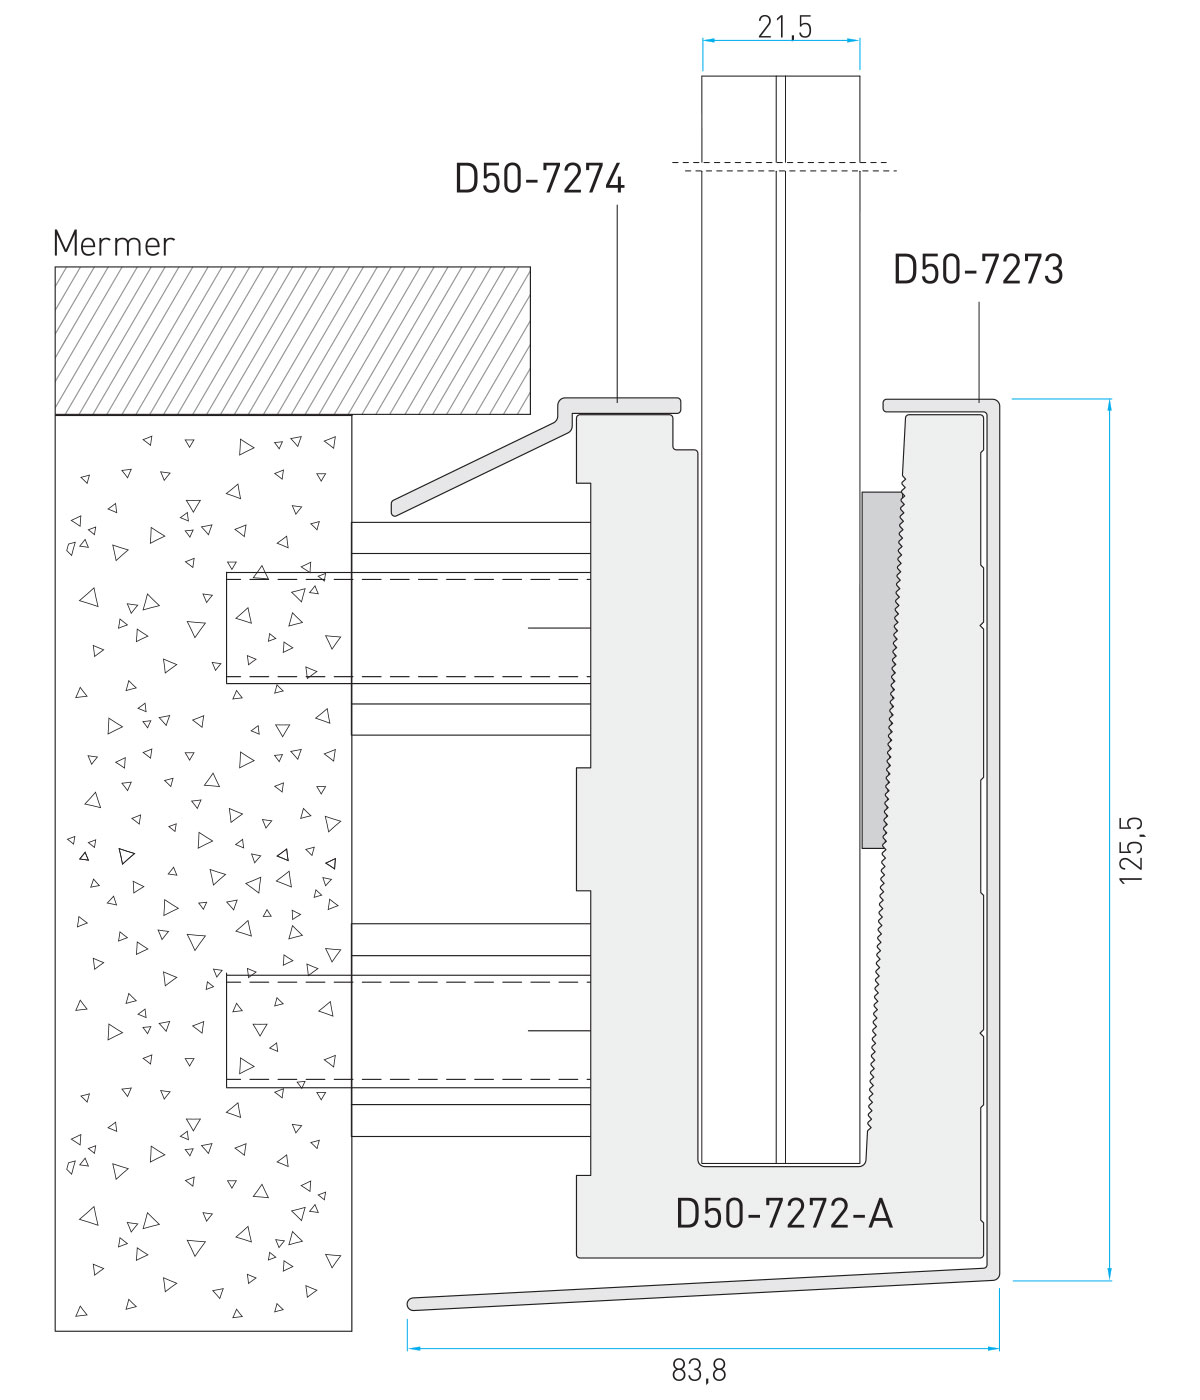 D50 crtež ugradnje straničnog podesivog nosača u kombinaciji sa mermerom